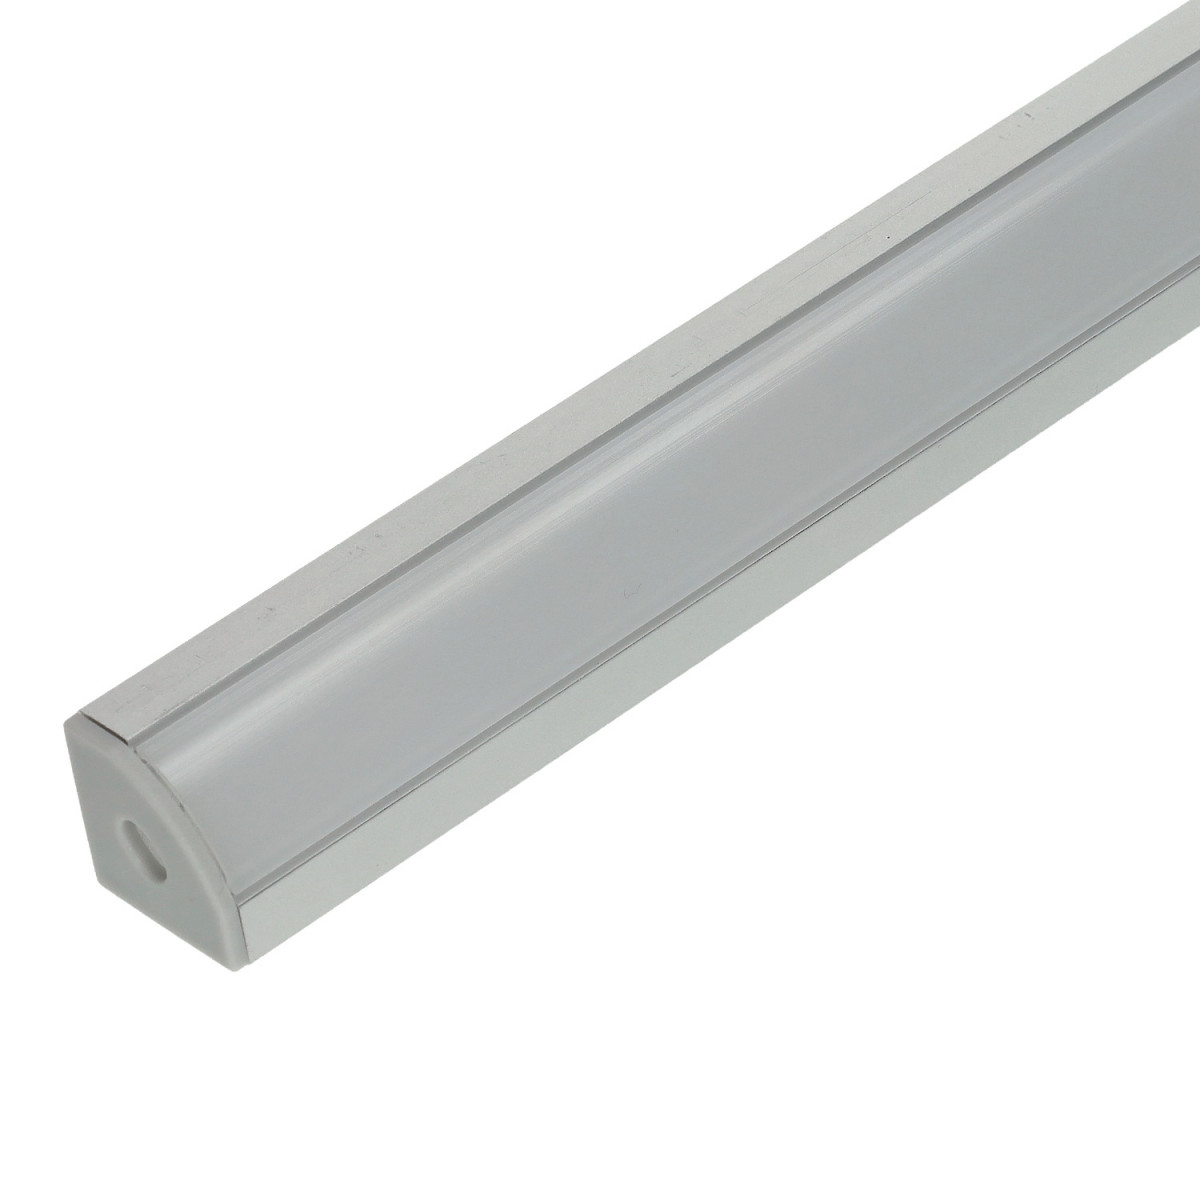 Profilo angolo alluminio STRISCIA LED 1 m